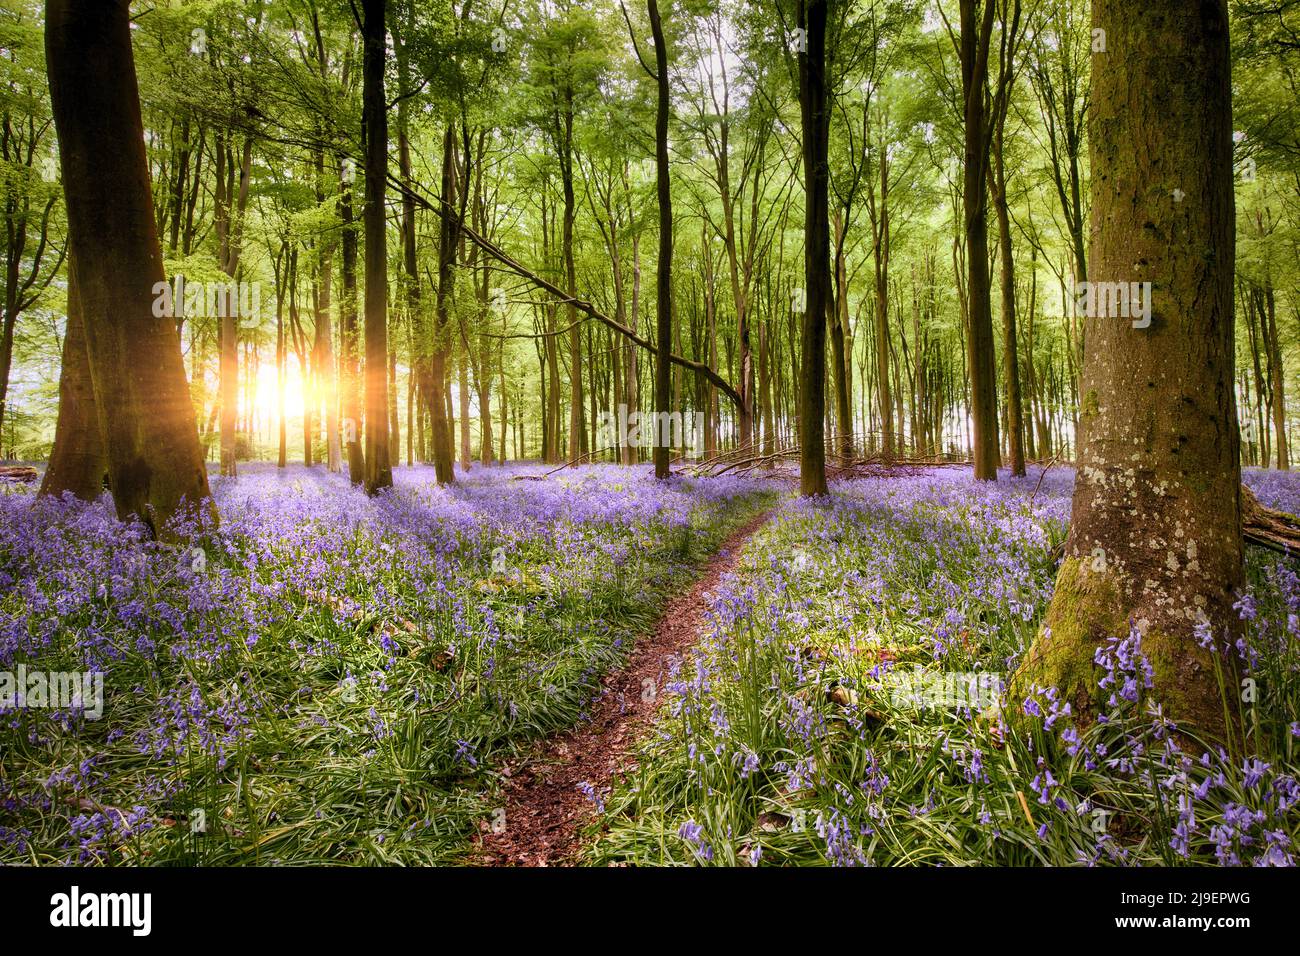 Chemin à travers l'incroyable bluebell bois lever de soleil dans Hampshire Angleterre. Fleurs sauvages de la forêt dans le paysage de printemps Banque D'Images